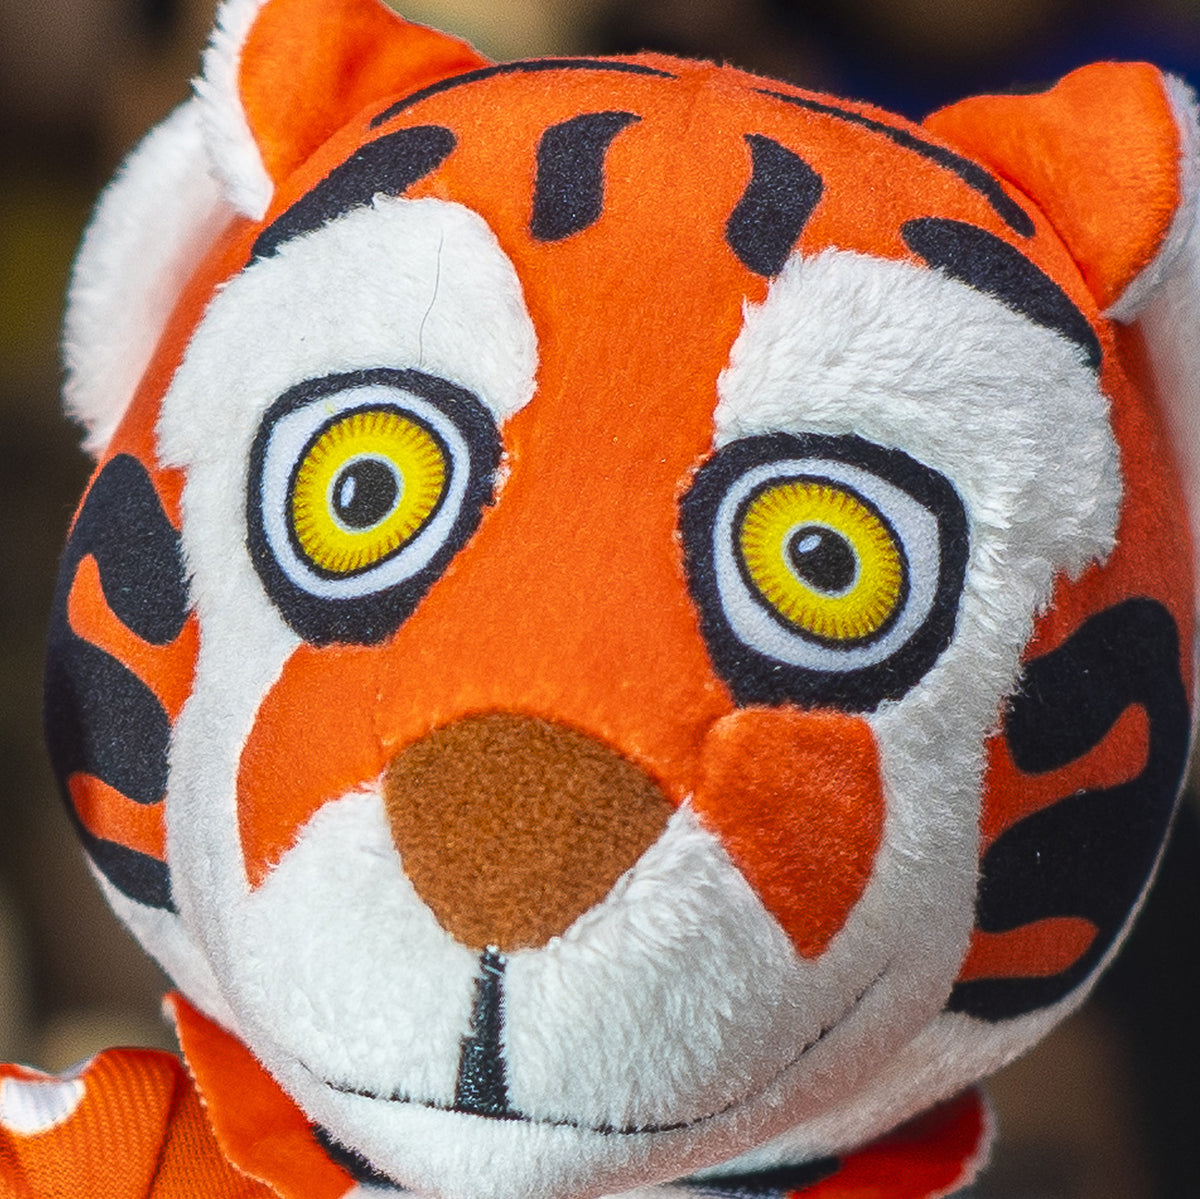 Clemson Tigers &quot;The Tiger&quot; 10&quot; Mascot Plush Figure